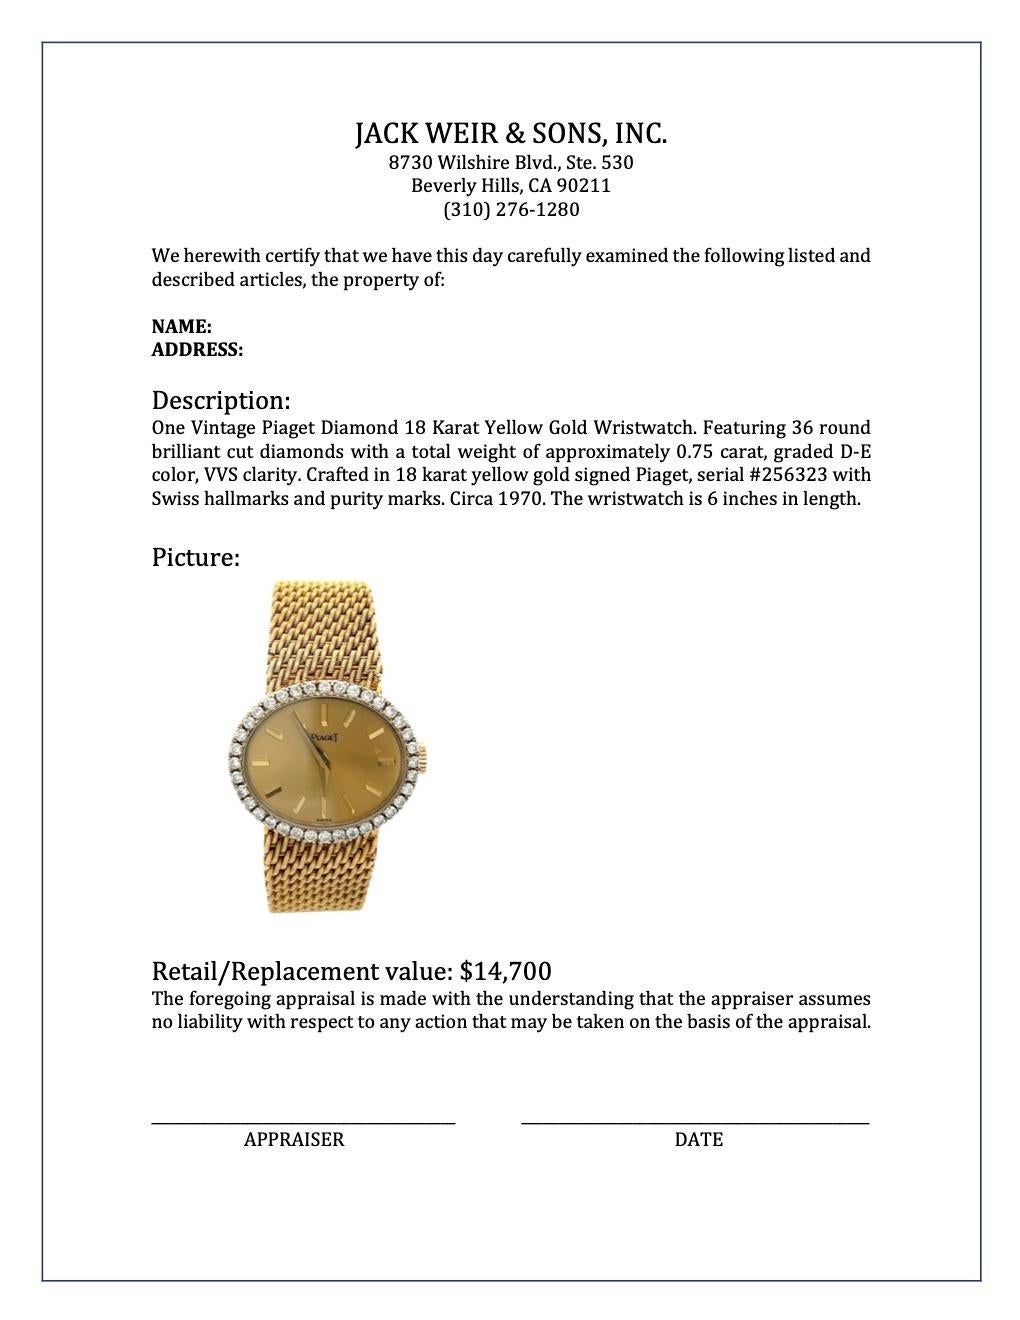 Vintage Piaget Diamond 18 Karat Yellow Gold Wristwatch 2